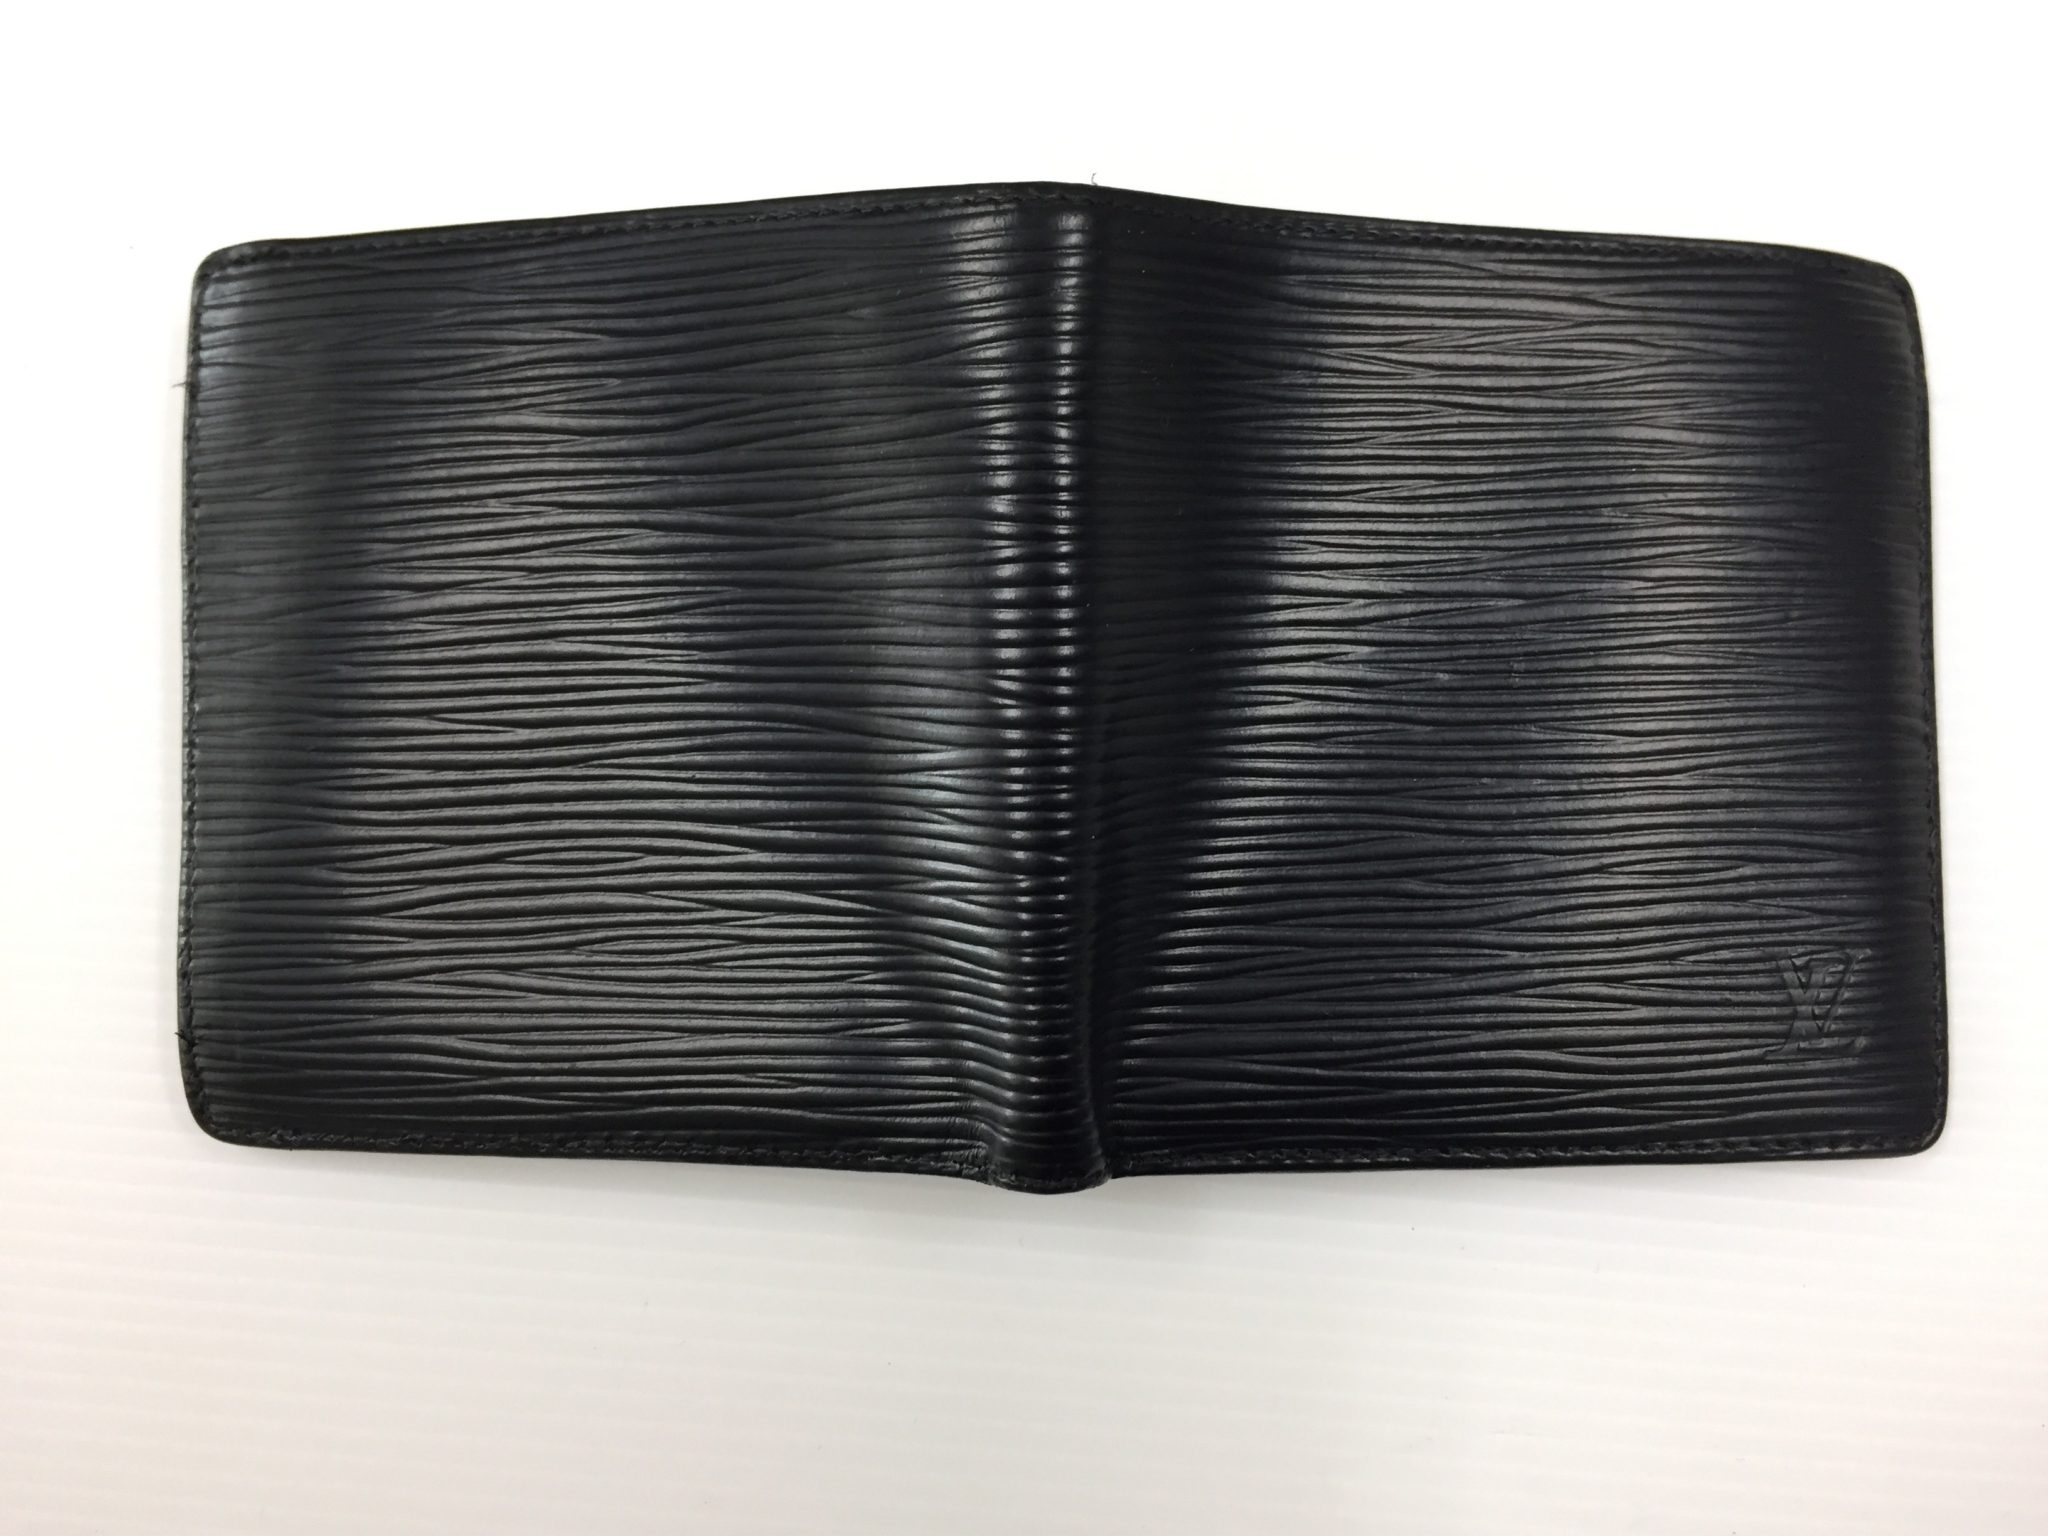 20-40 ルイヴィトン(Louis Vuitton)エピお財布黒へお色替えアフター